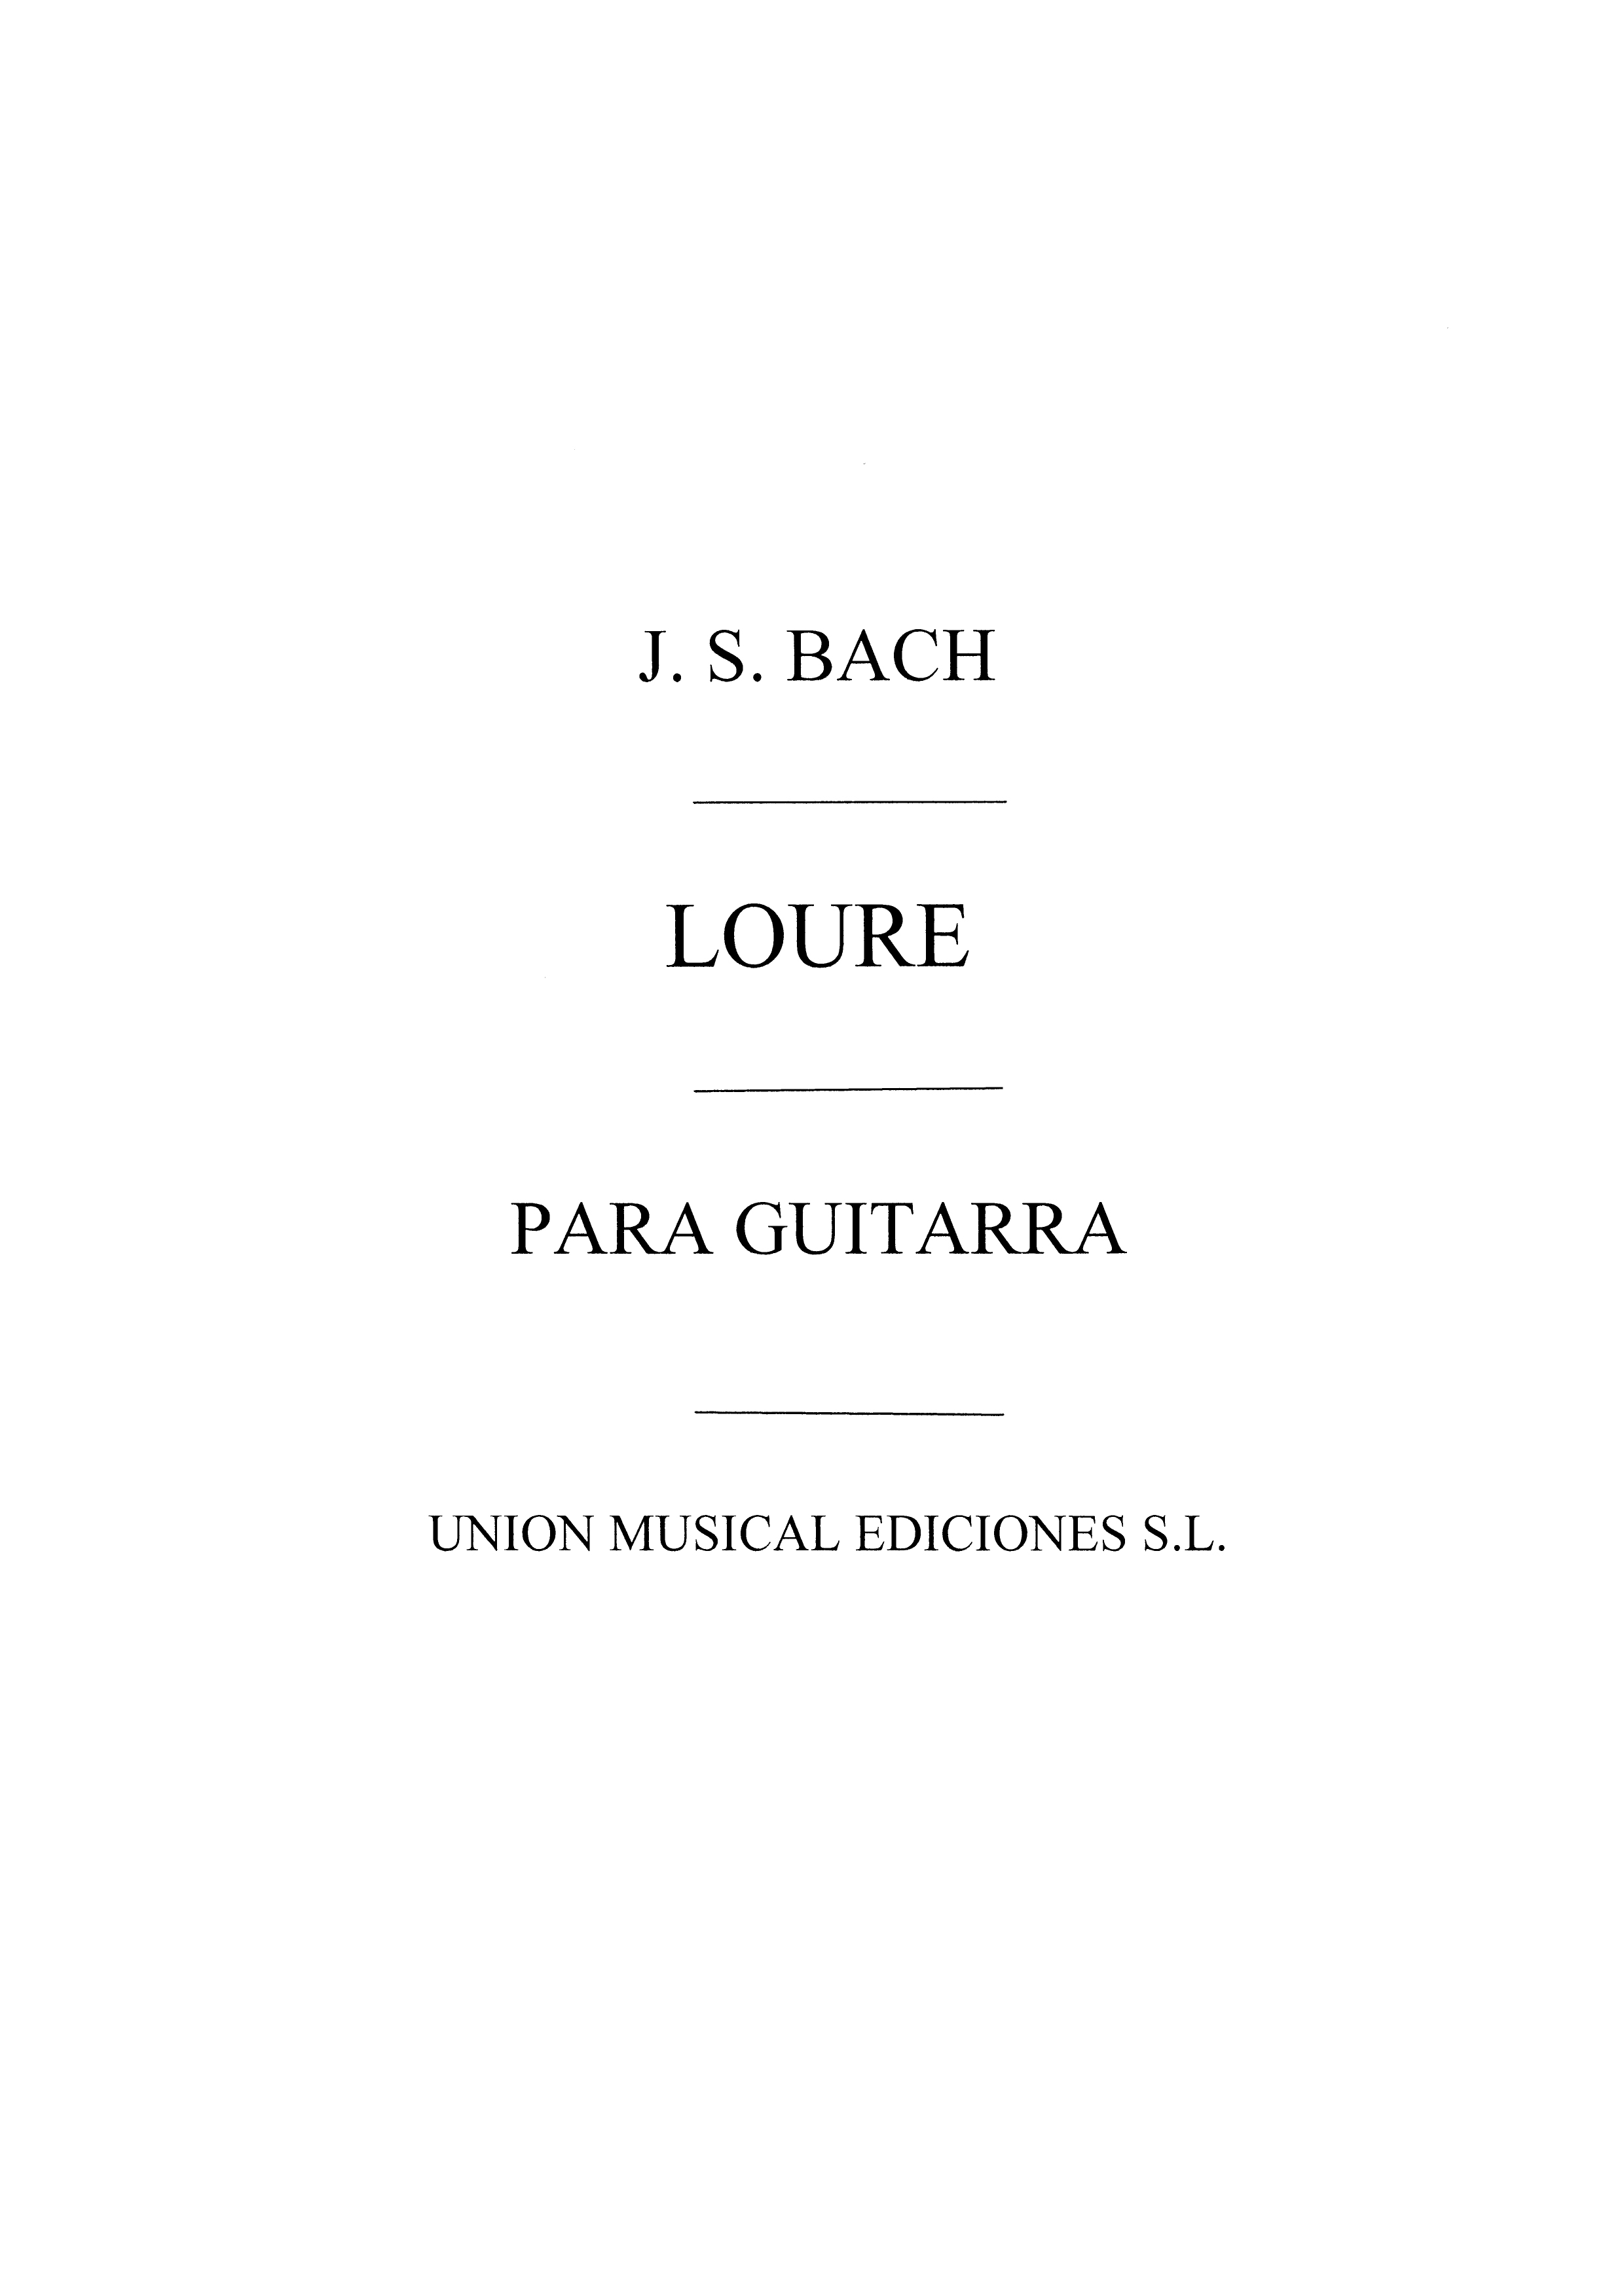 J.S. Bach Loure (tarrega) Guitar